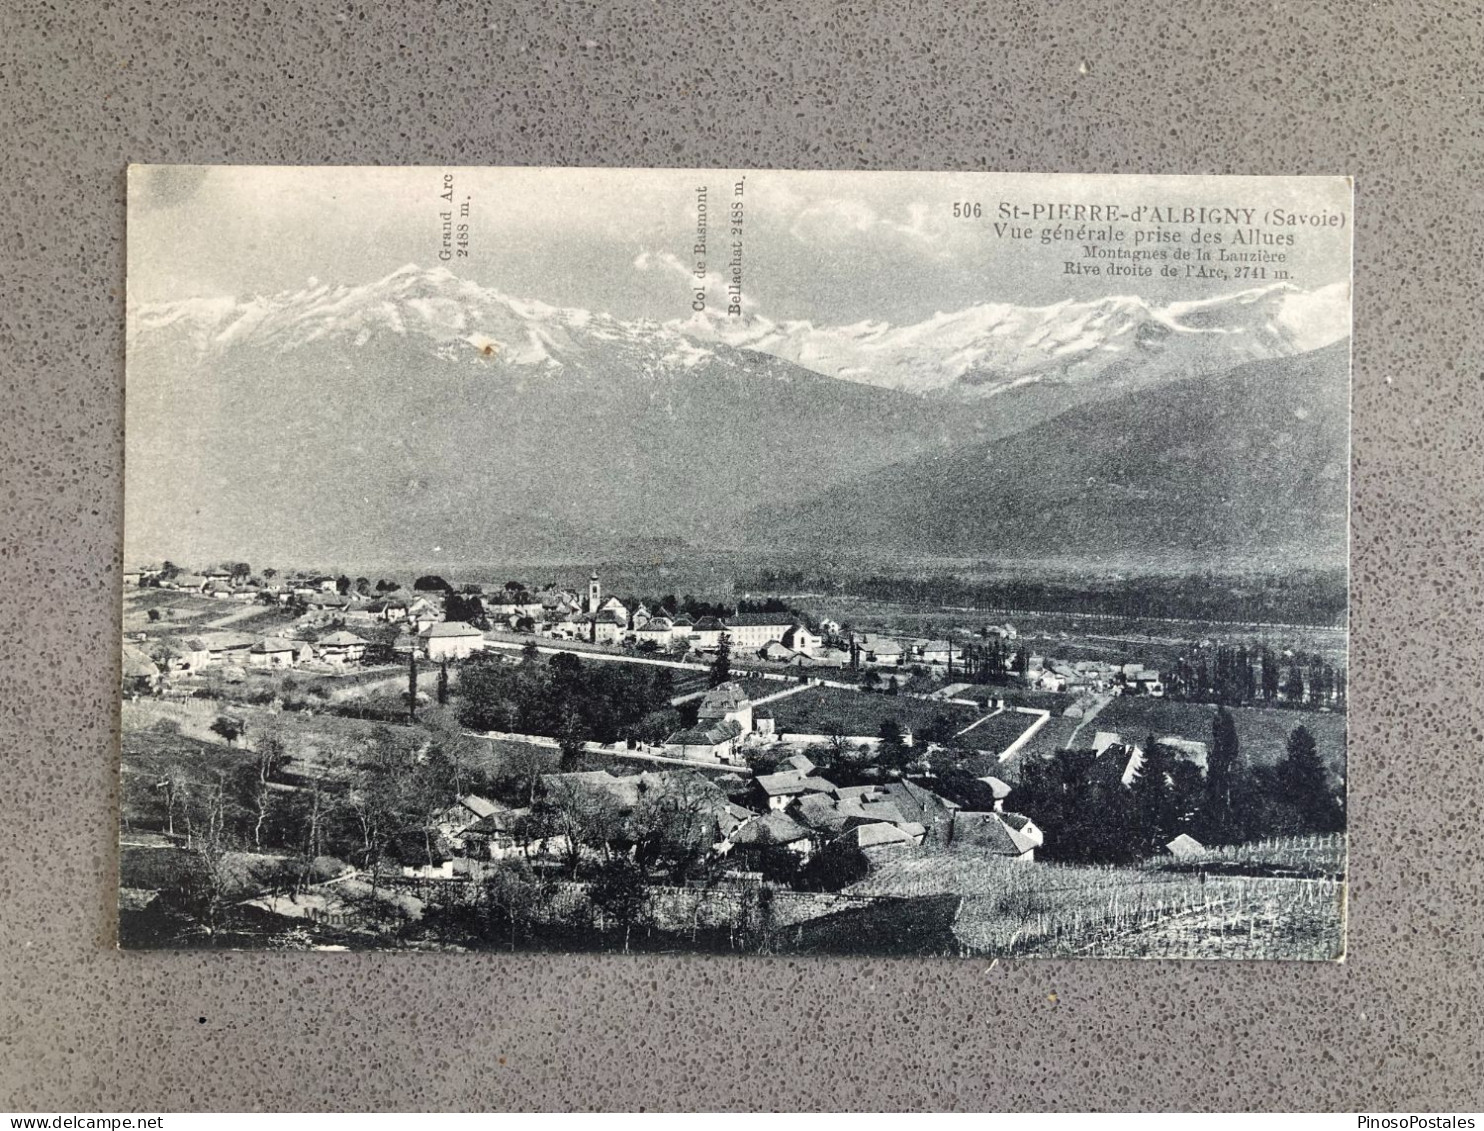 St-Pierre-D'Albigny (Savoie) Vue Generale Prise Des Allues Carte Postale Postcard - Saint Pierre D'Albigny